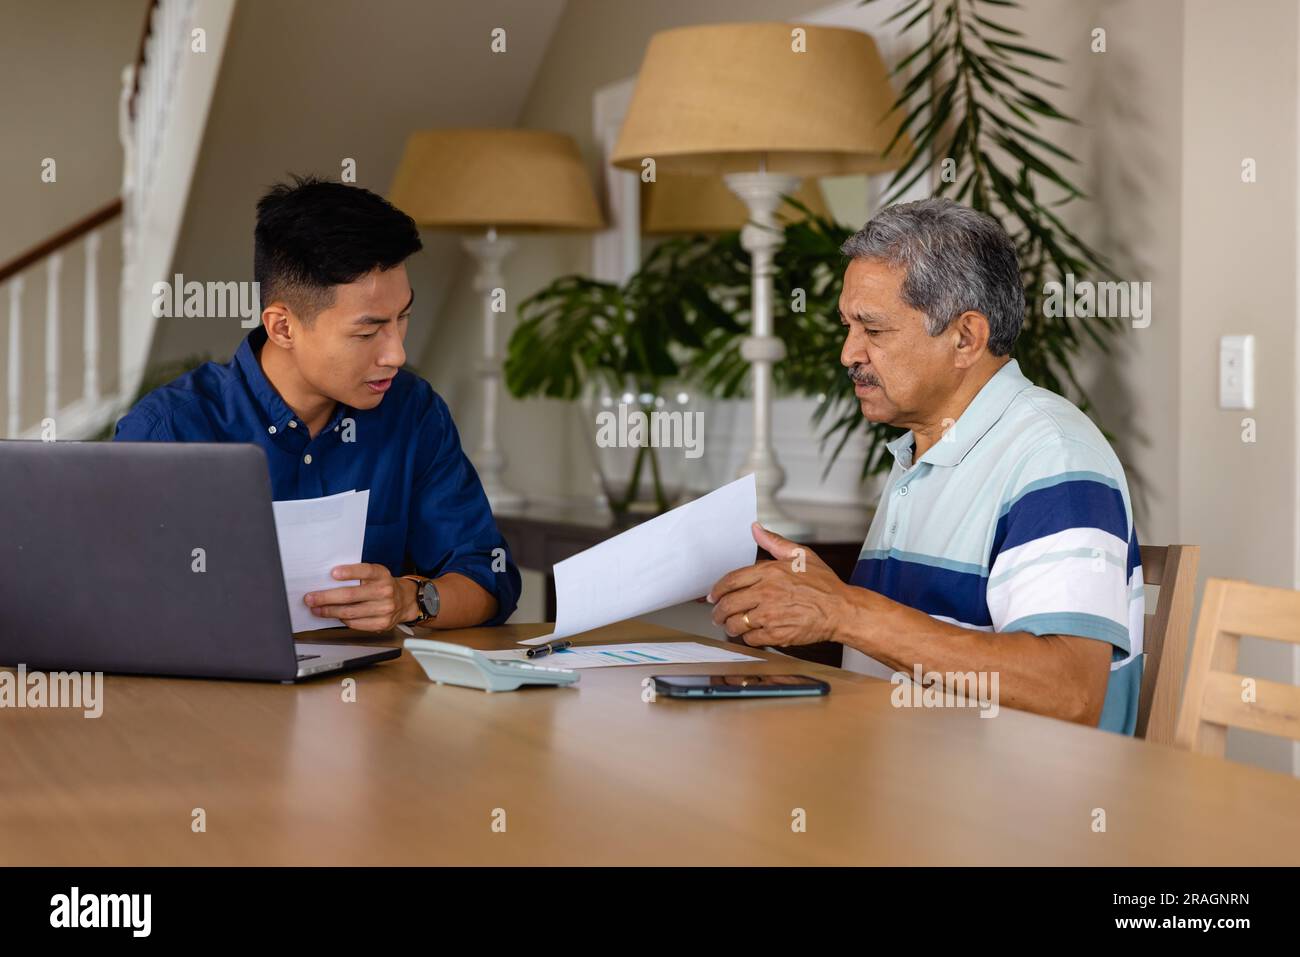 Consulente finanziario eterogeneo e uomo anziano che discute di documenti cartacei e utilizza il computer portatile in sala da pranzo Foto Stock